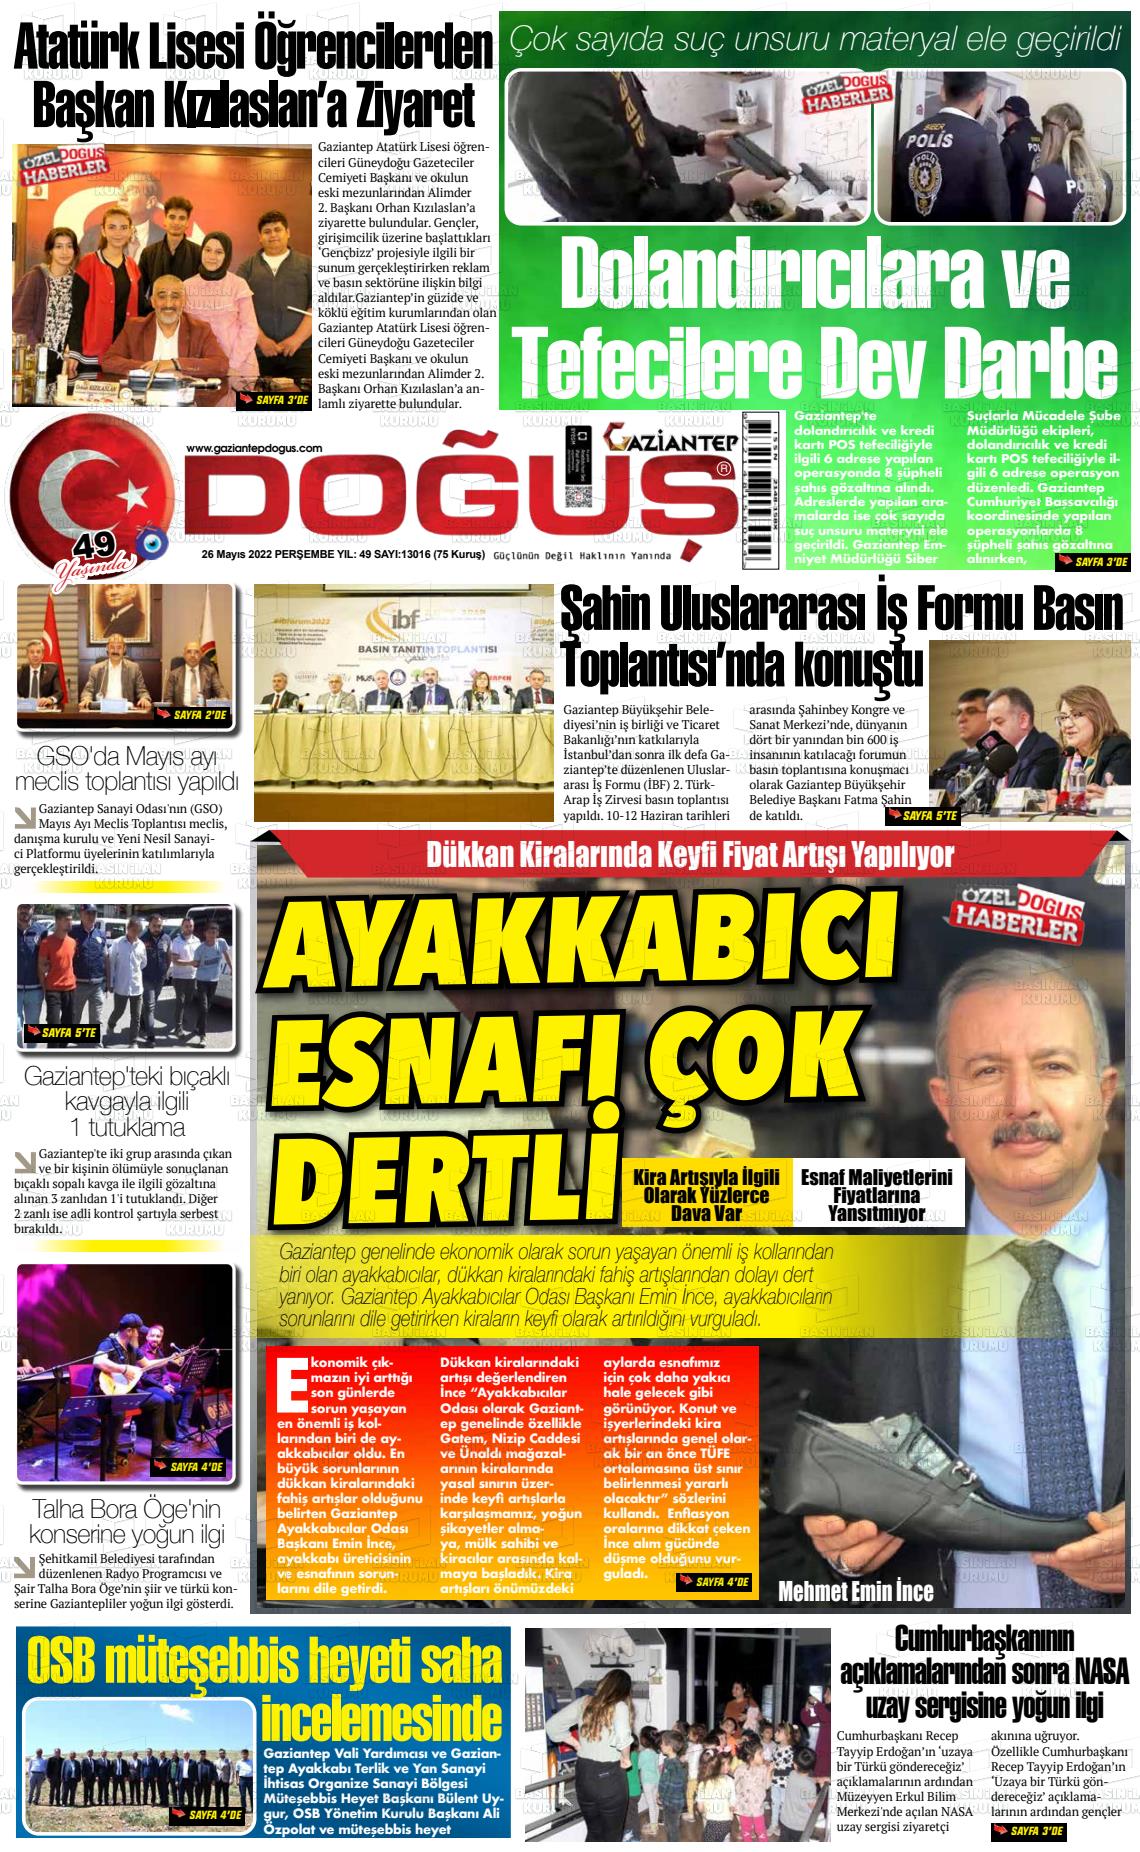 26 Mayıs 2022 Gaziantep Doğuş Gazete Manşeti